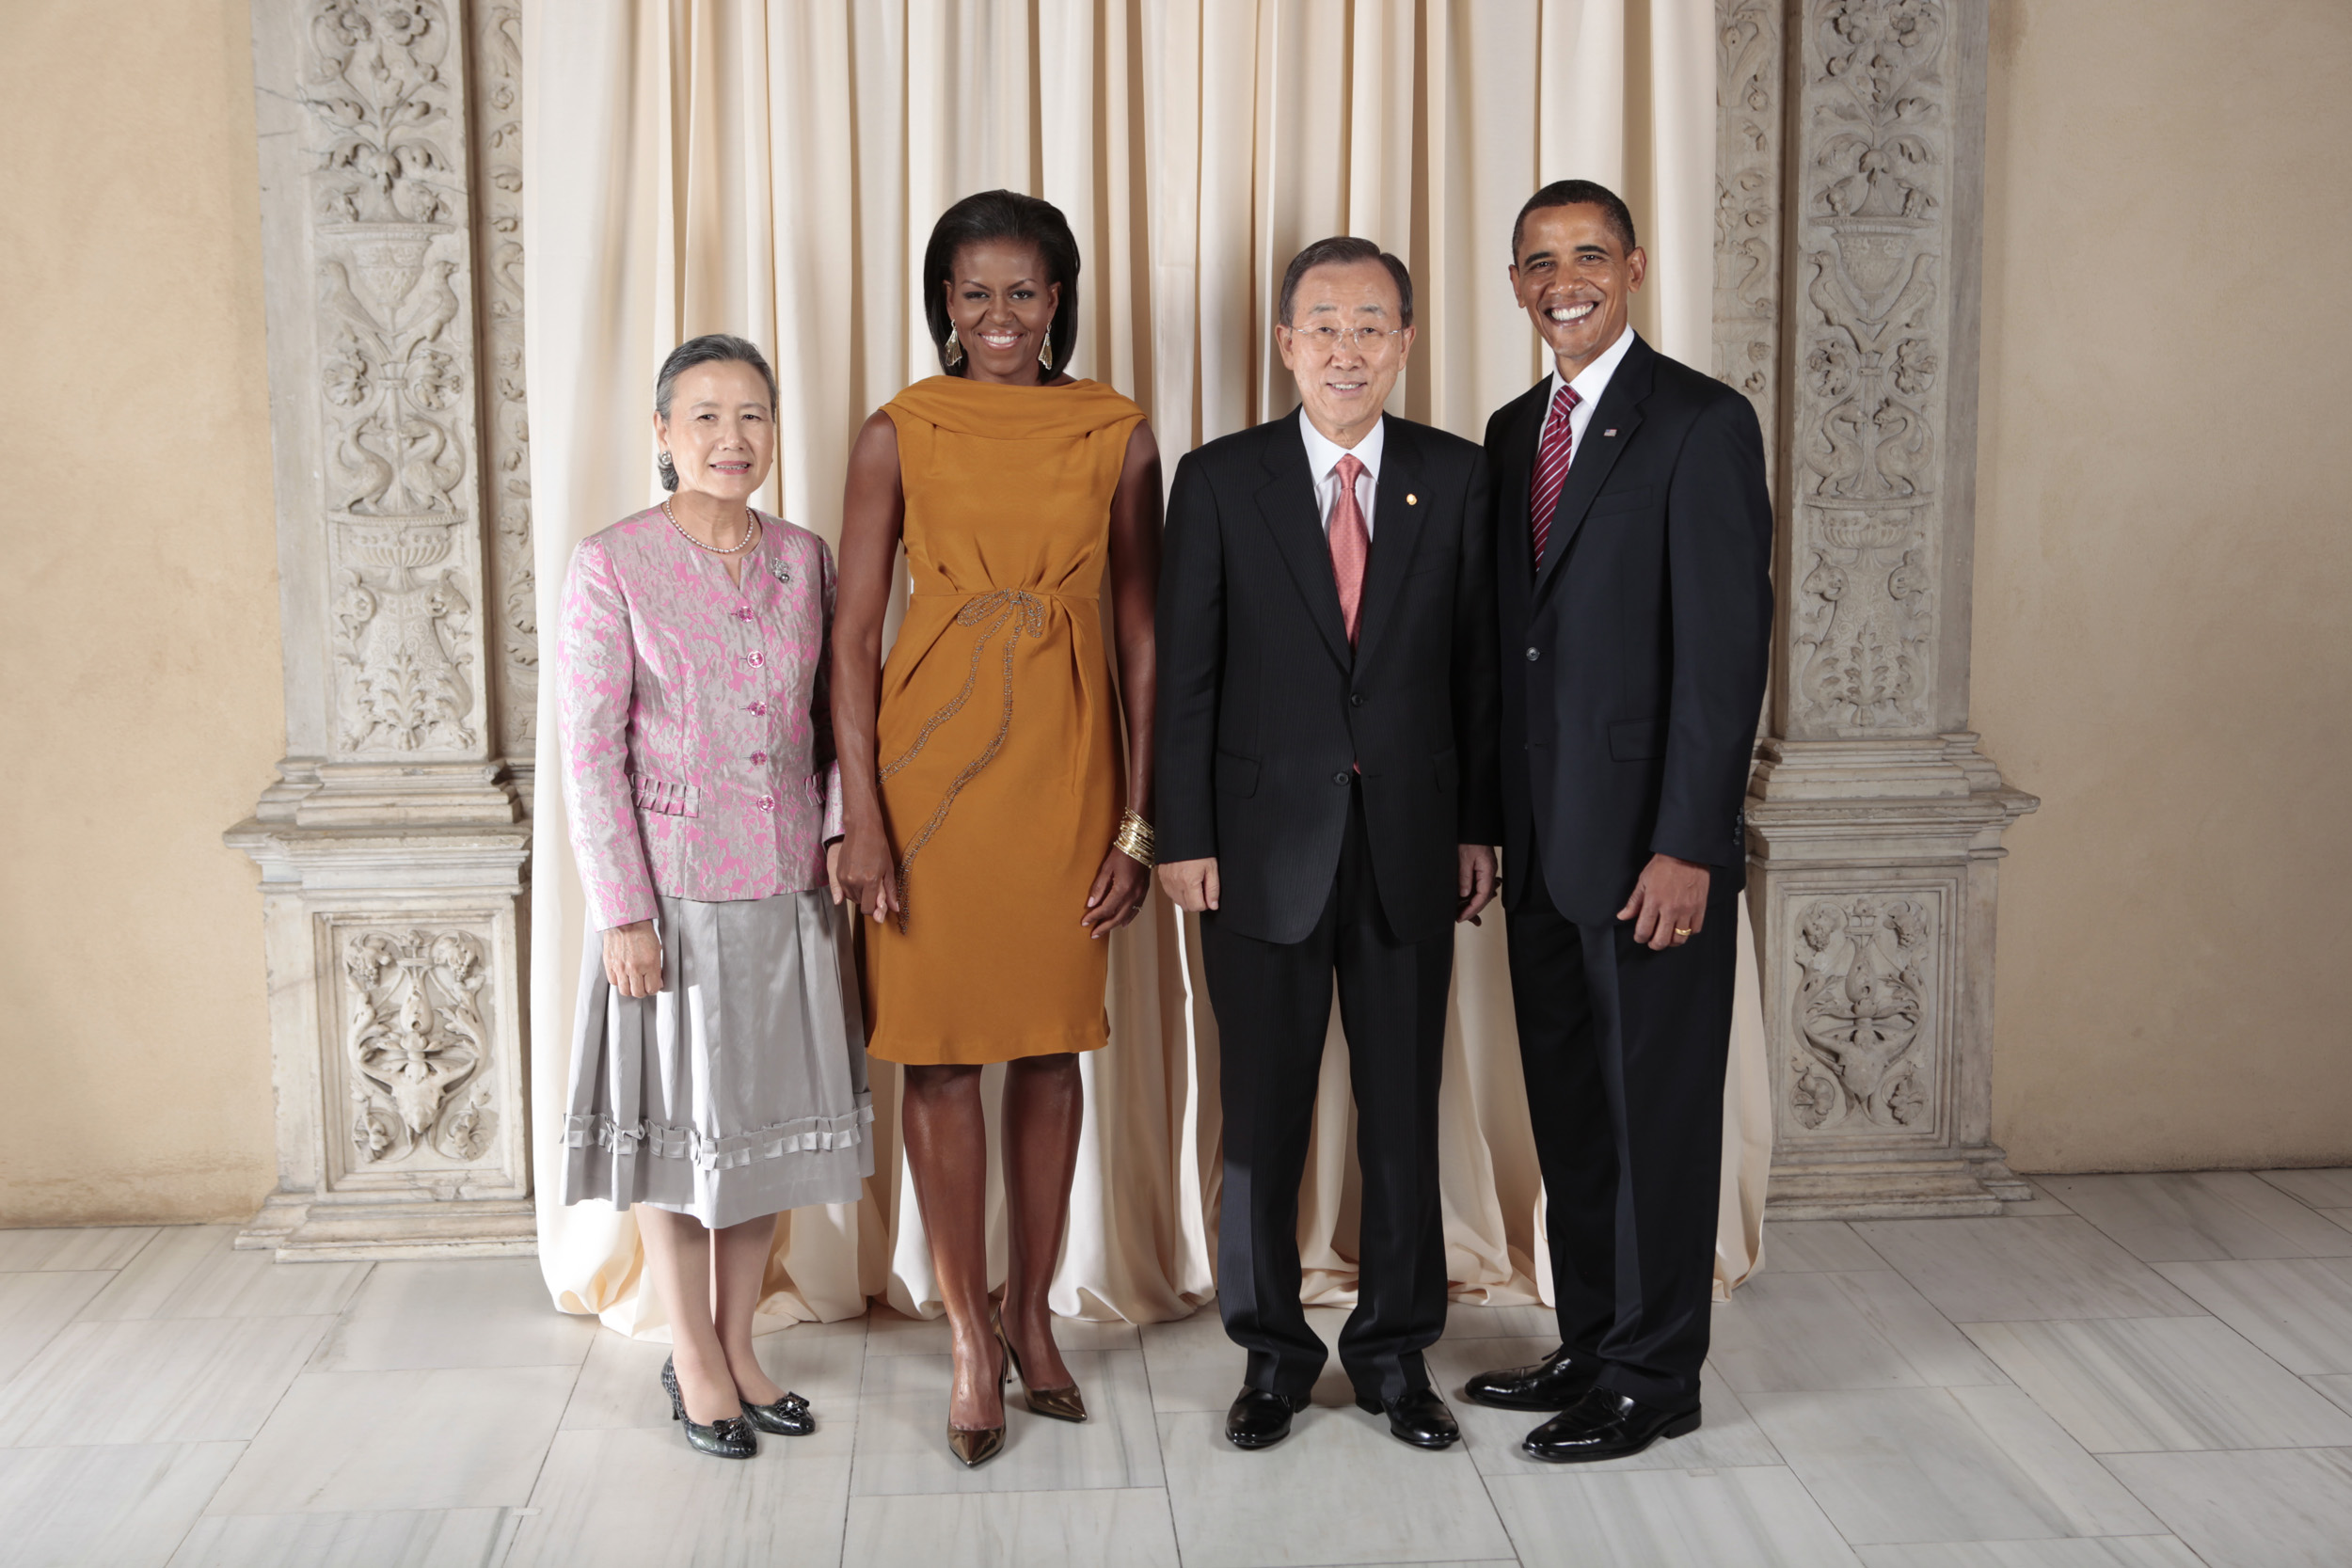 Ban Ki-moon with Obamas